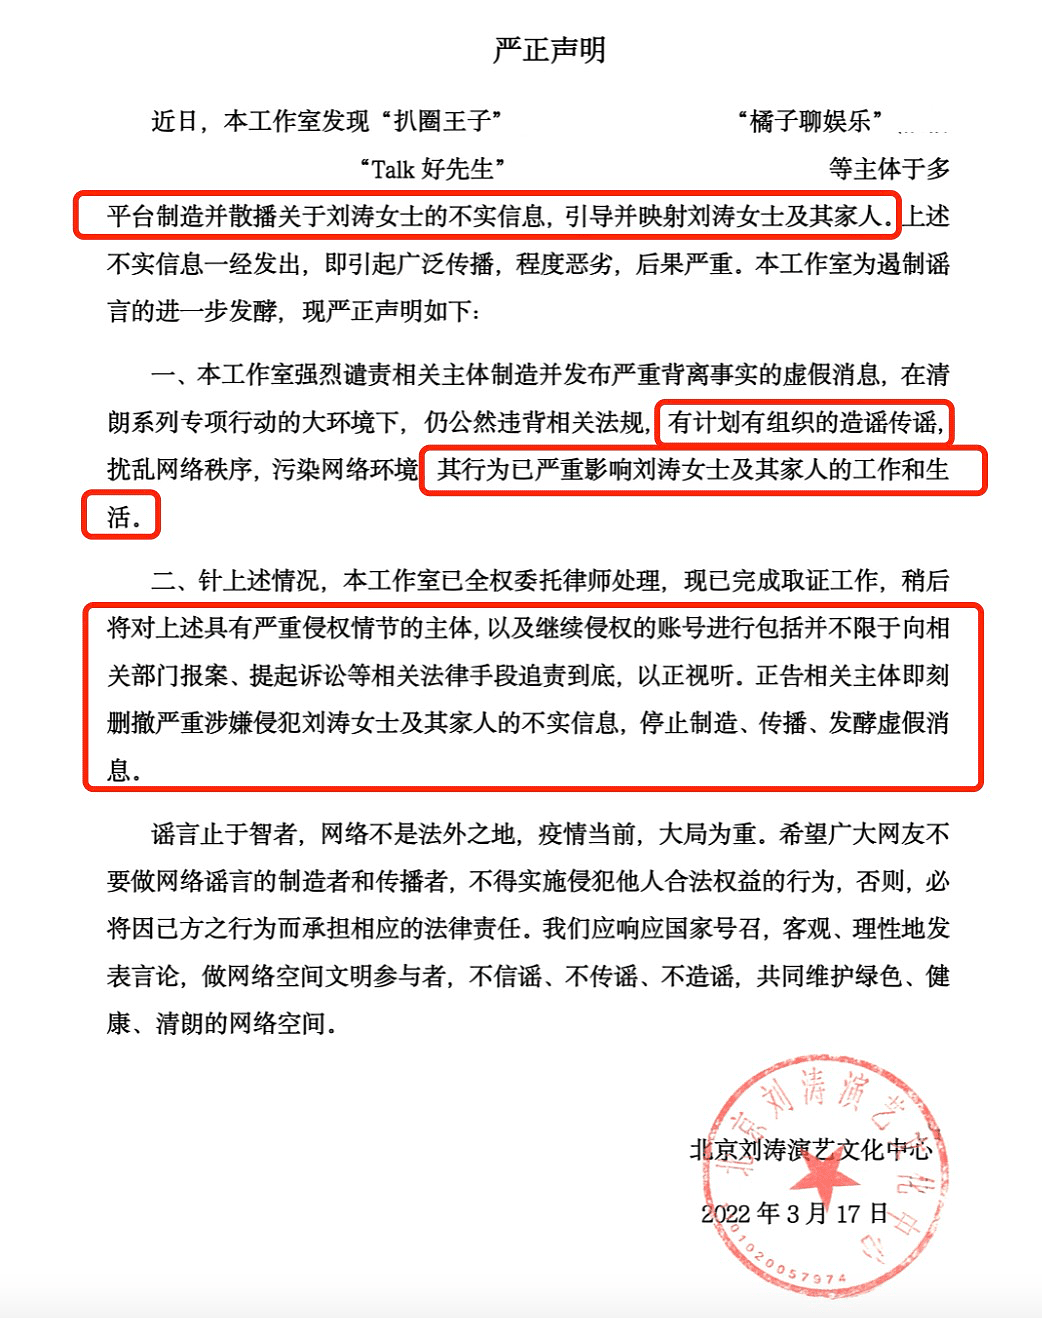 刘涛工作室发声明辟谣，与王珂离婚系不实信息，呼吁大众理性发言 - 2